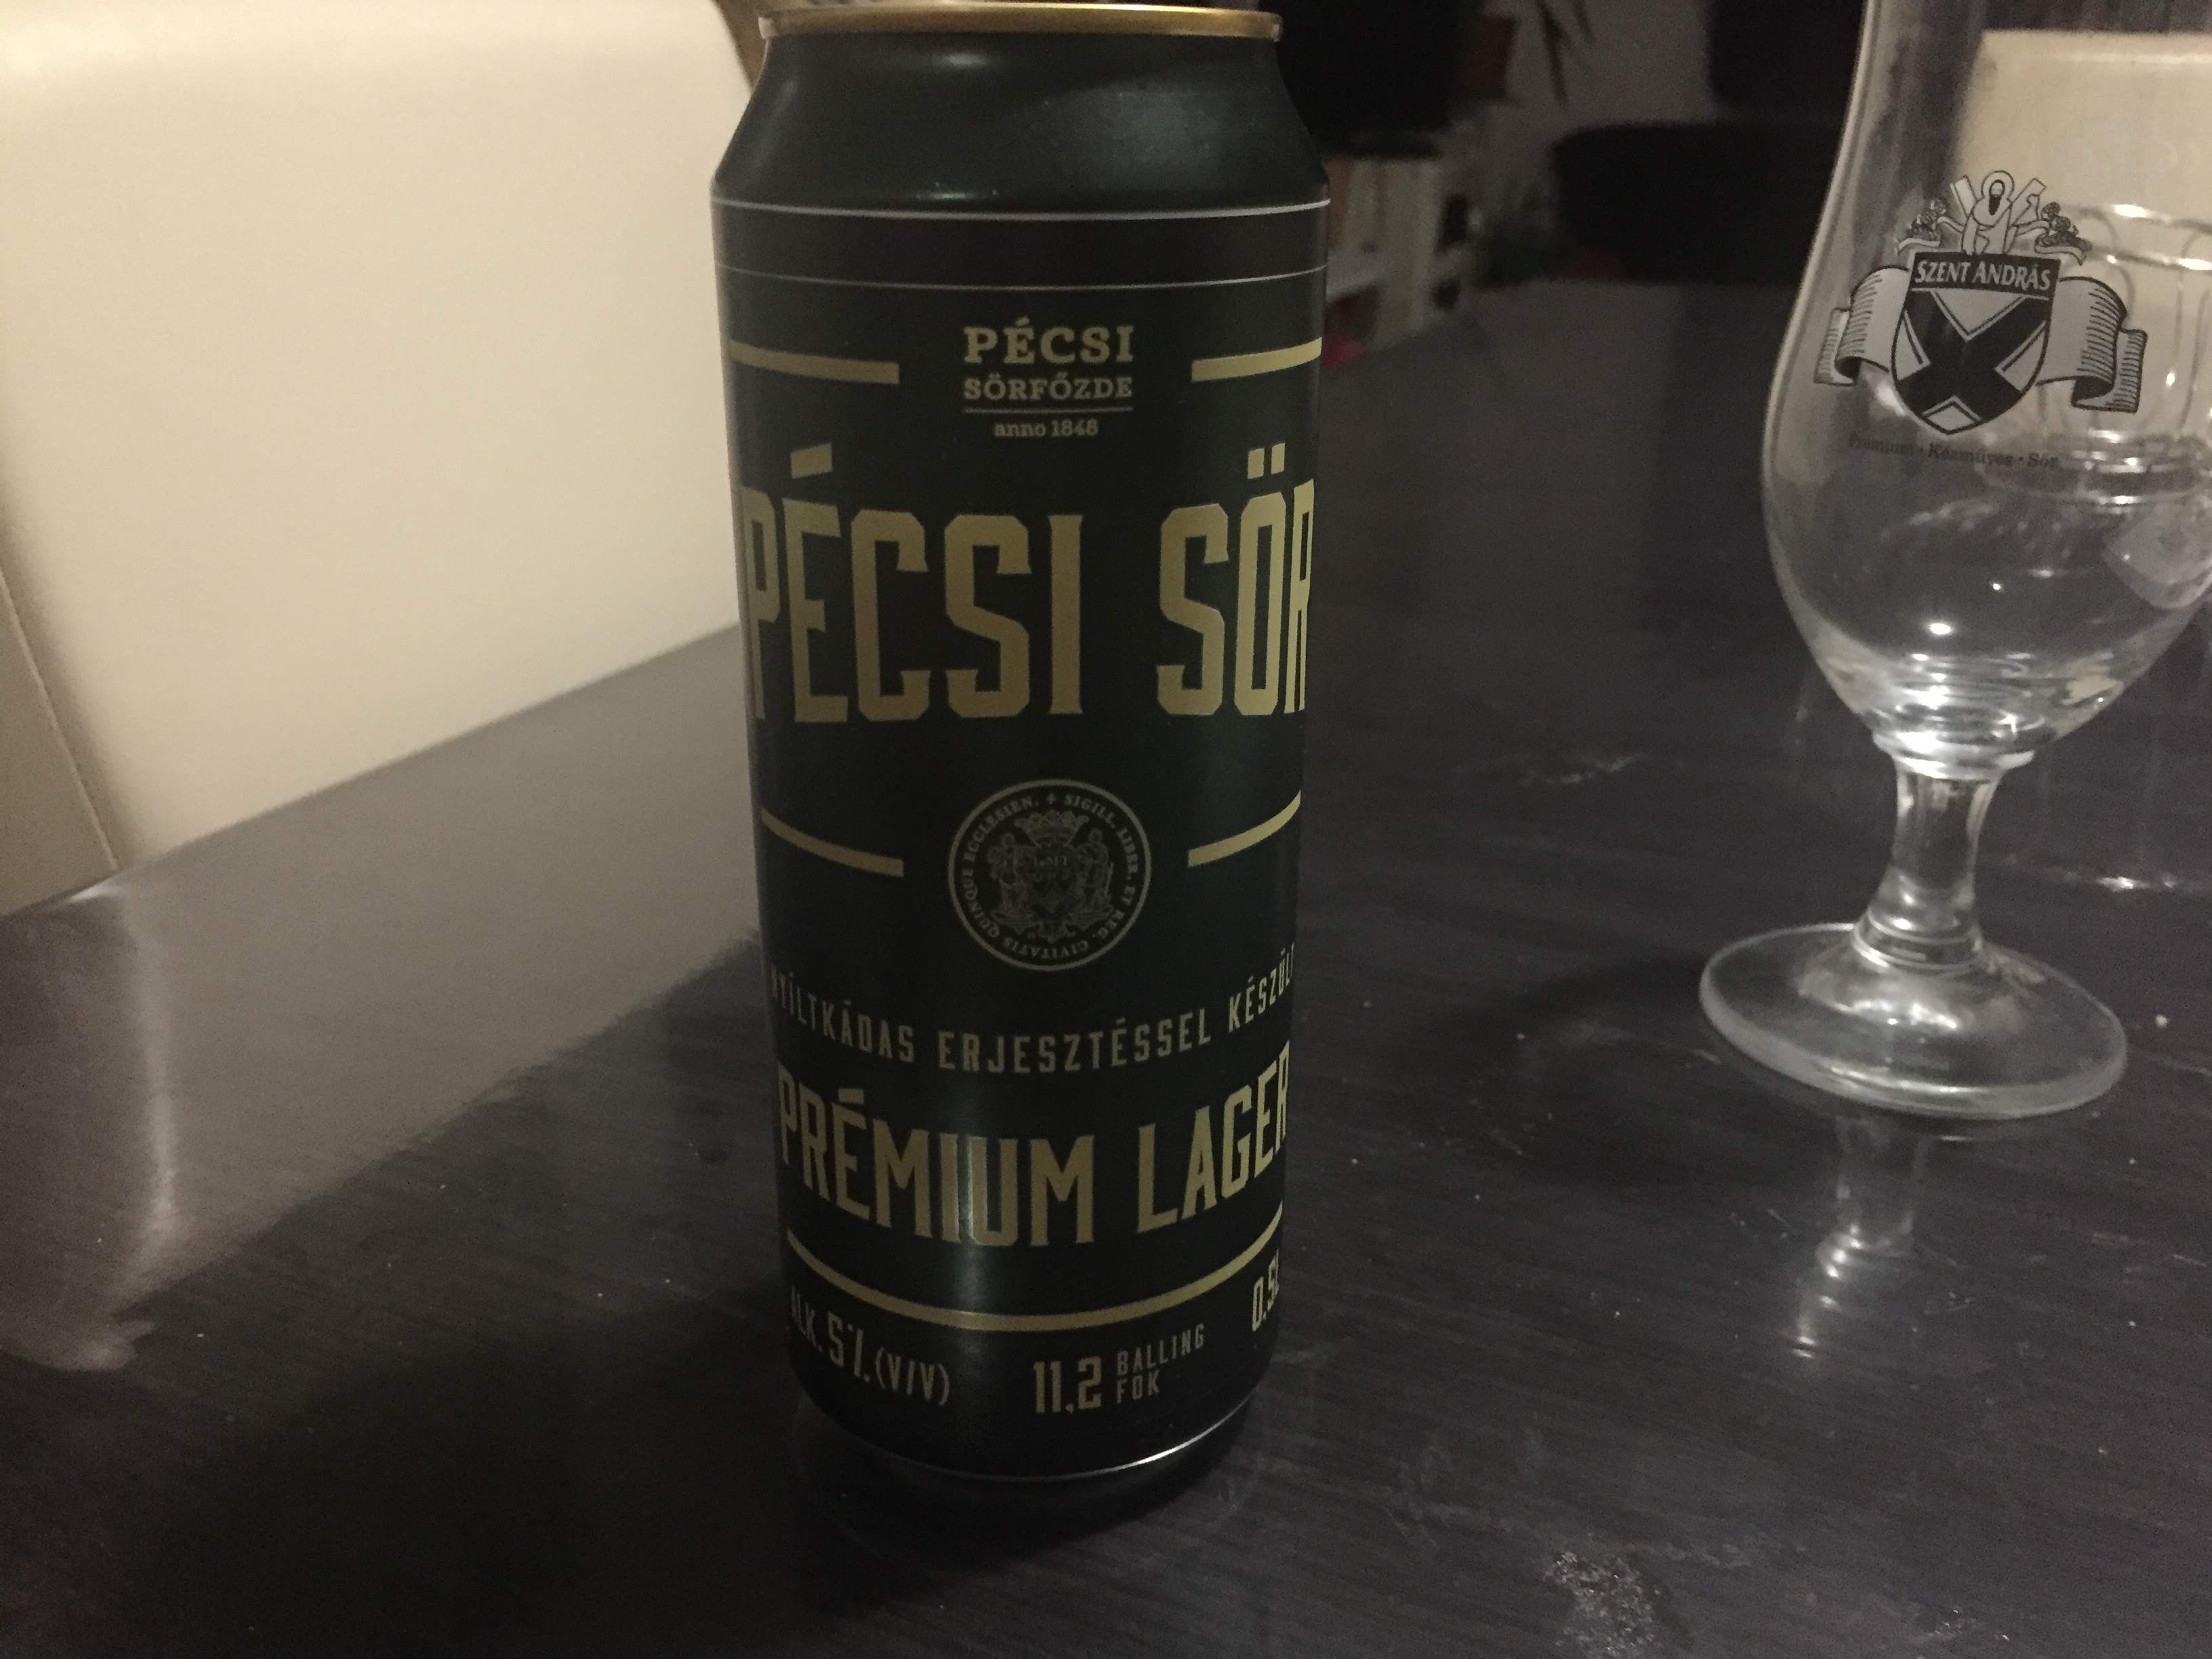 Pécsi sör  Premium lager  nagyüzem  kráter  Lager  kraft sör  komló  maláta  élesztő